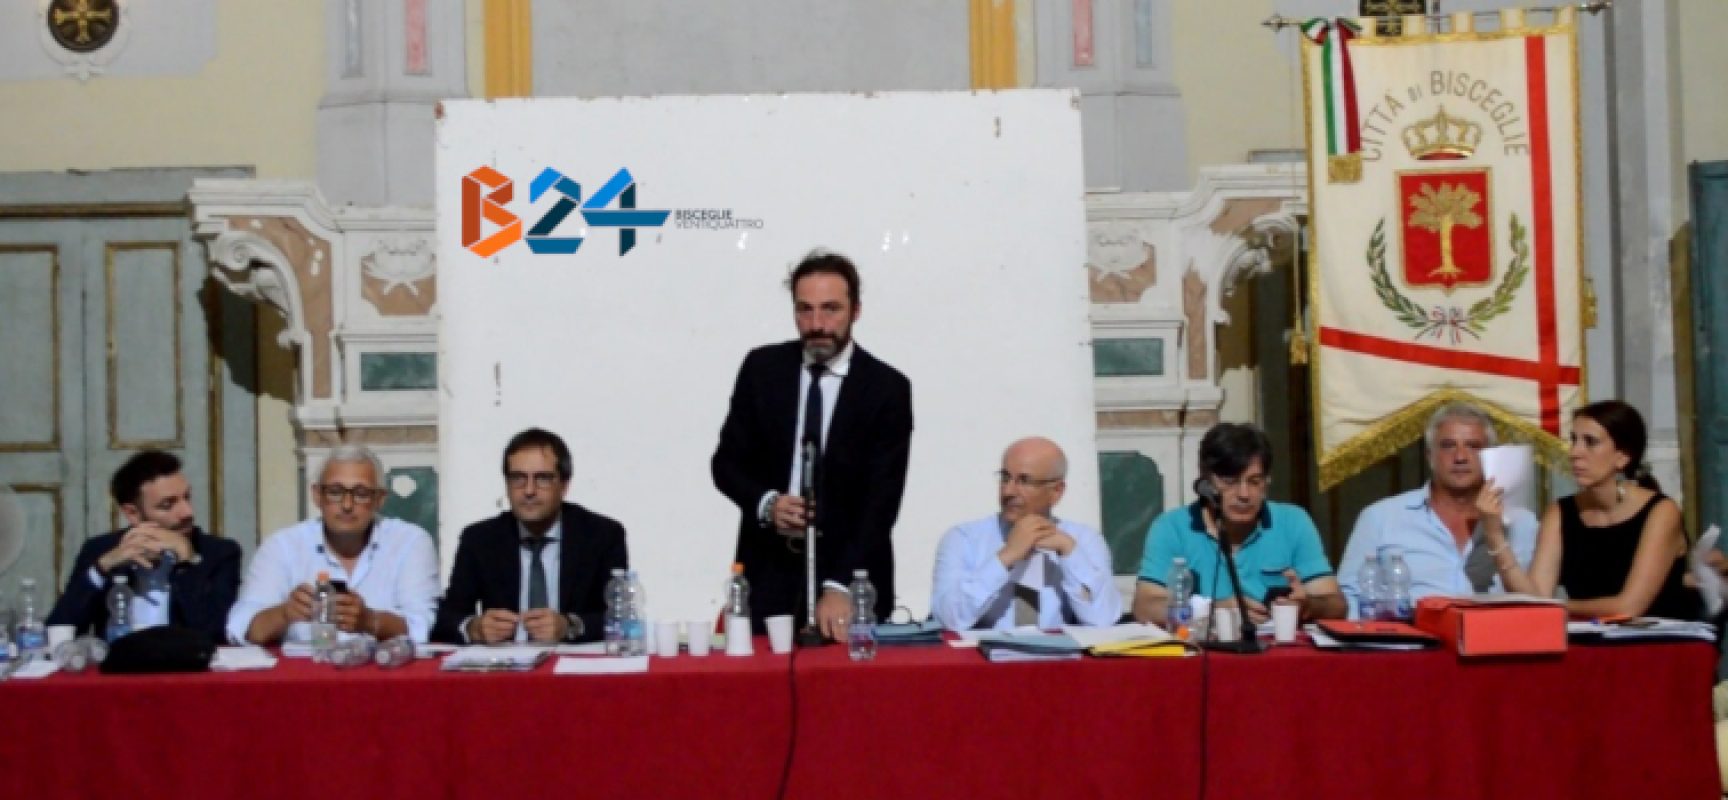 Consiglio comunale: Gianni Casella eletto presidente, ecco le commissioni